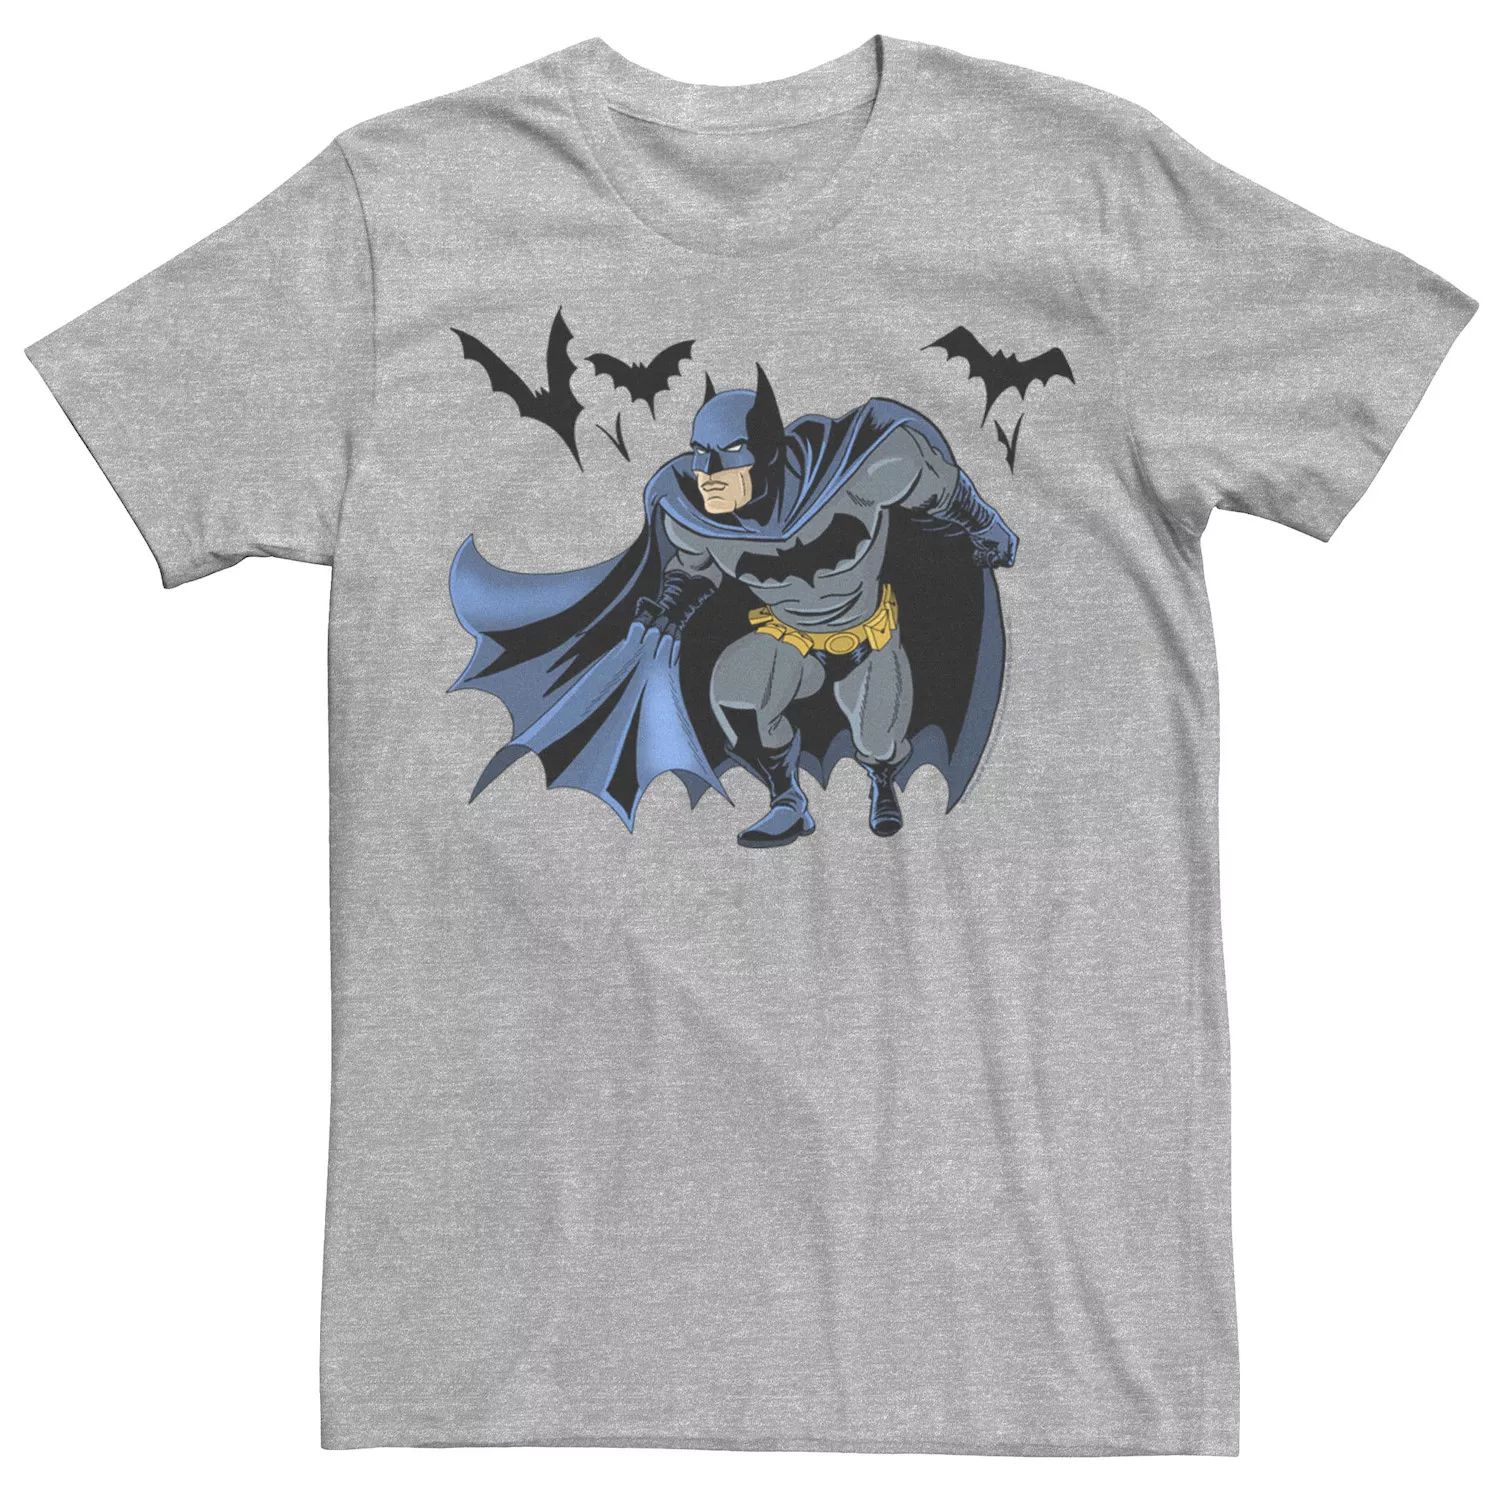 Мужская футболка DC Fandome Batman Crouch с портретом Licensed Character